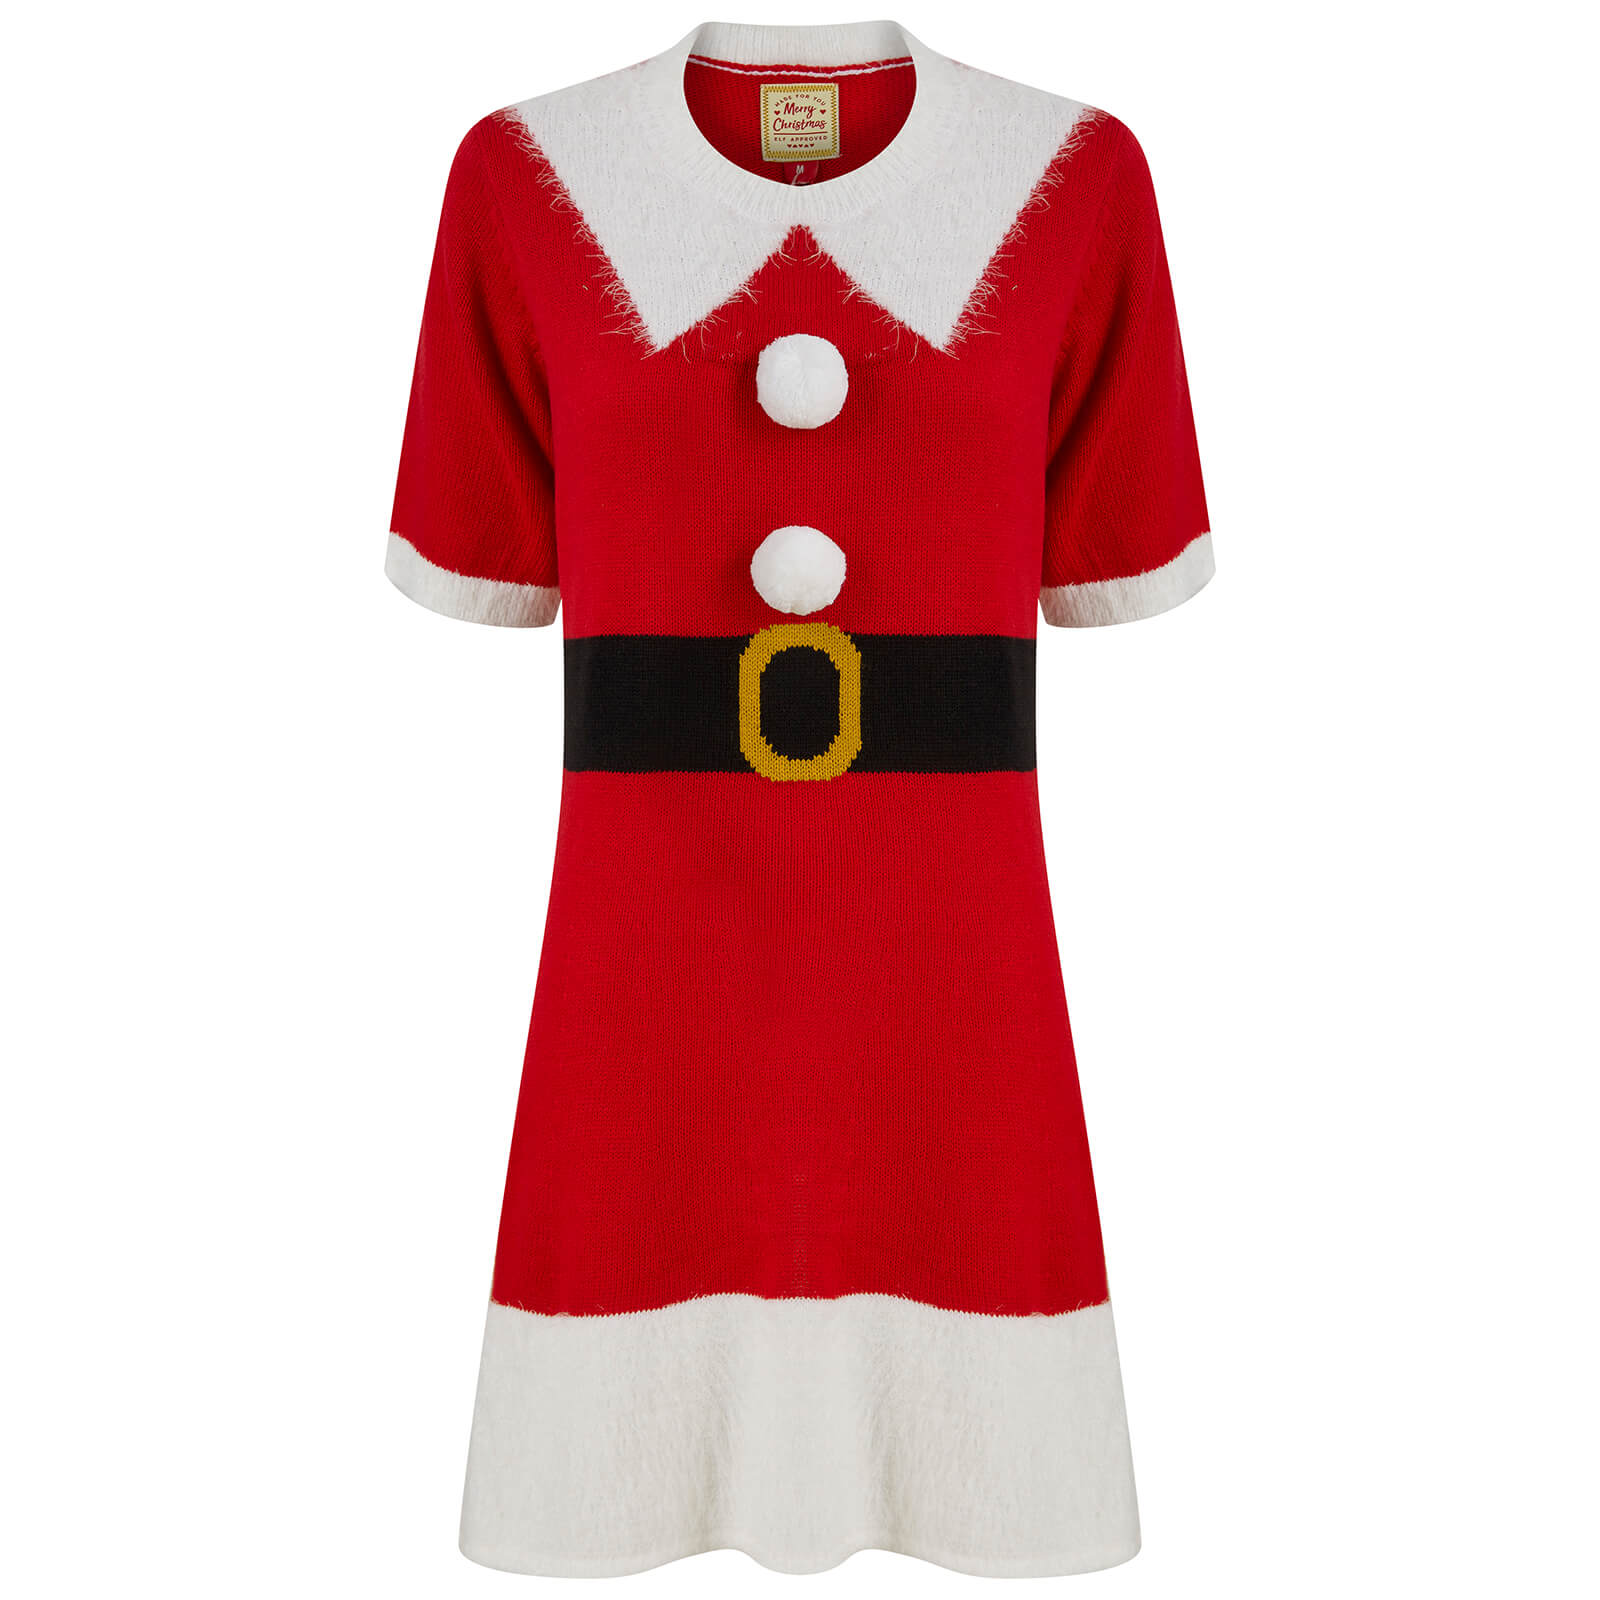 Mr Crimbo Womens Mrs Claus Santa Jumper Dress 3D Pom Poms - MrCrimbo.co.uk -SRG3M17494_A - S -jumper